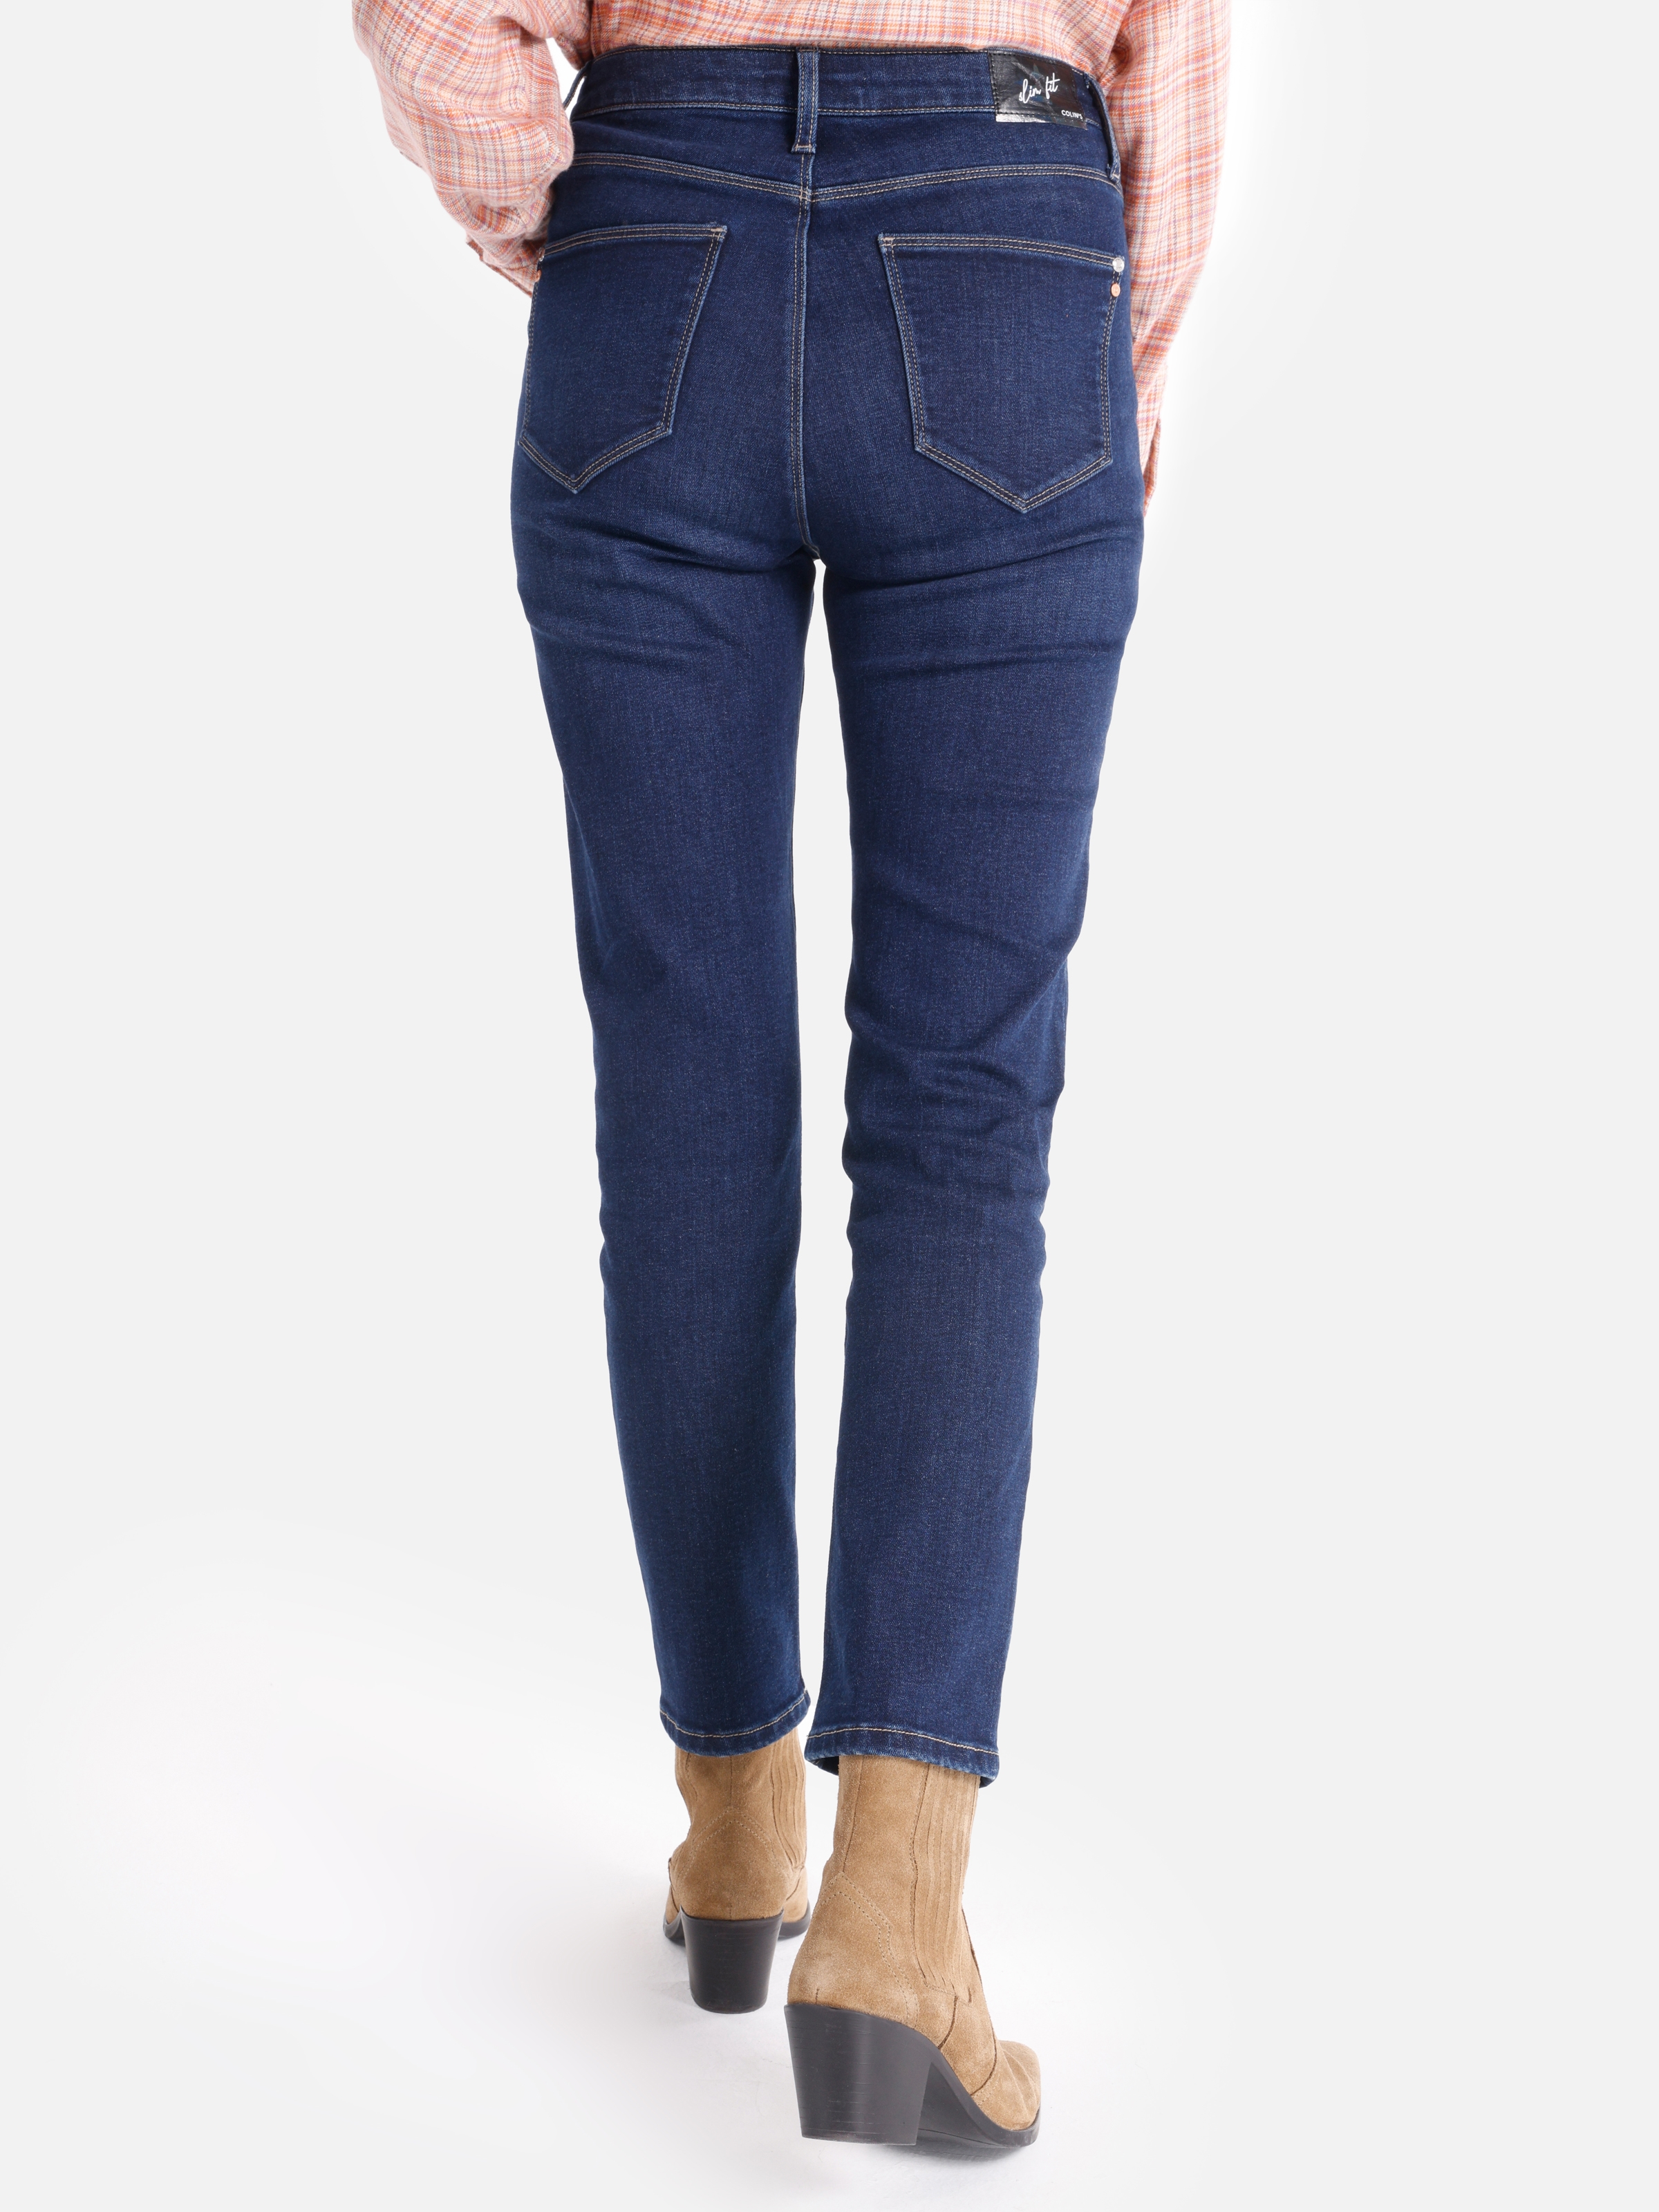 Afișați detalii pentru Pantaloni De Dama Albastru Slim Fit 703 CARLA CL1065304